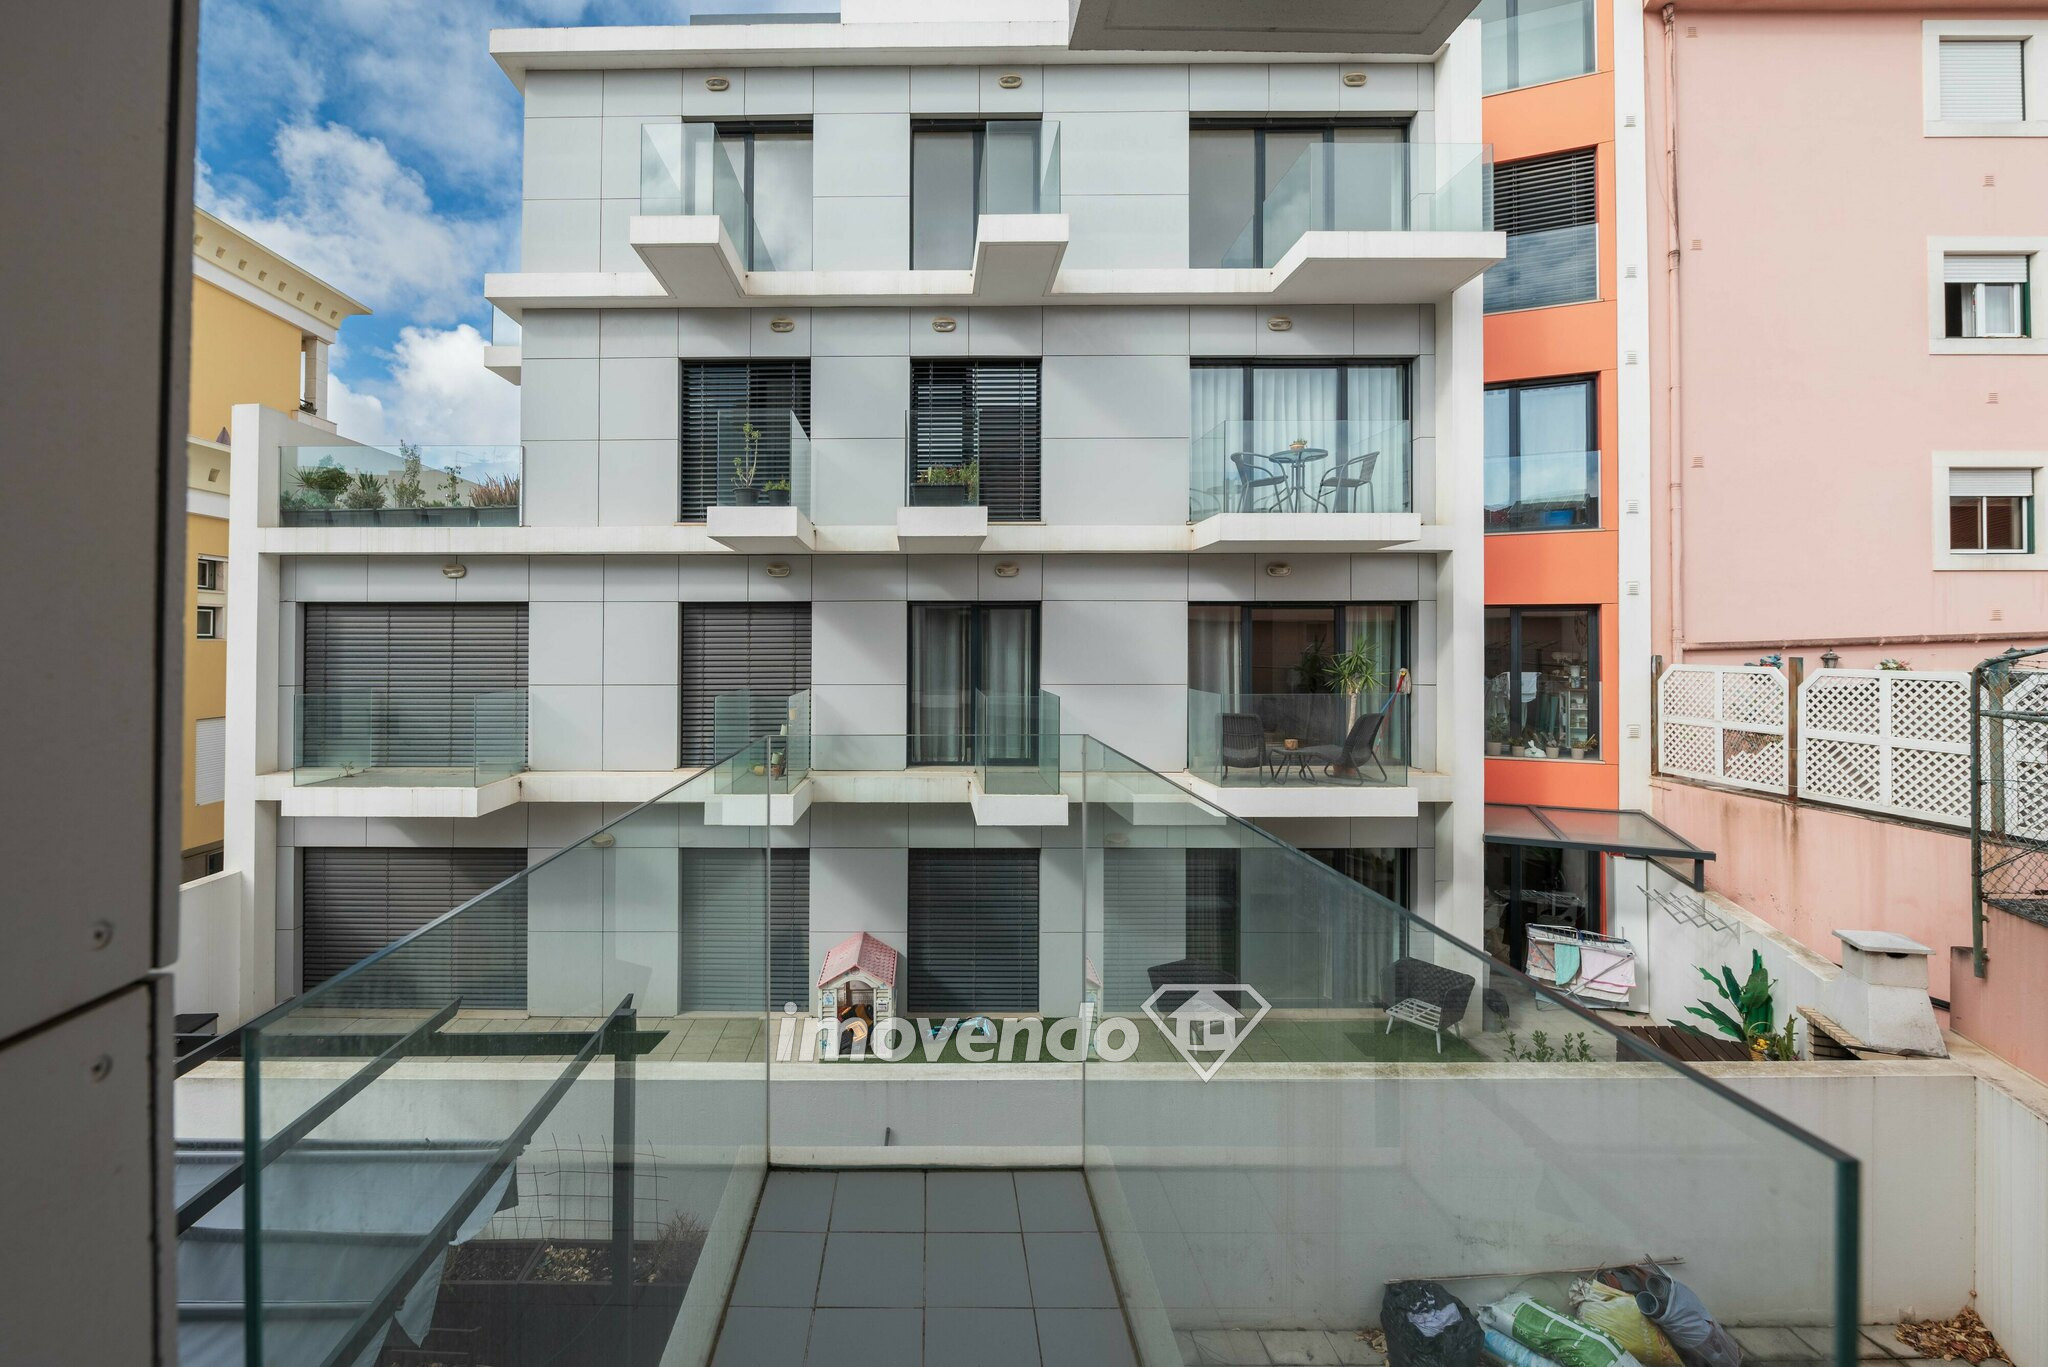 Apartamento T2 moderno, com garagem, no centro de Torres Vedras